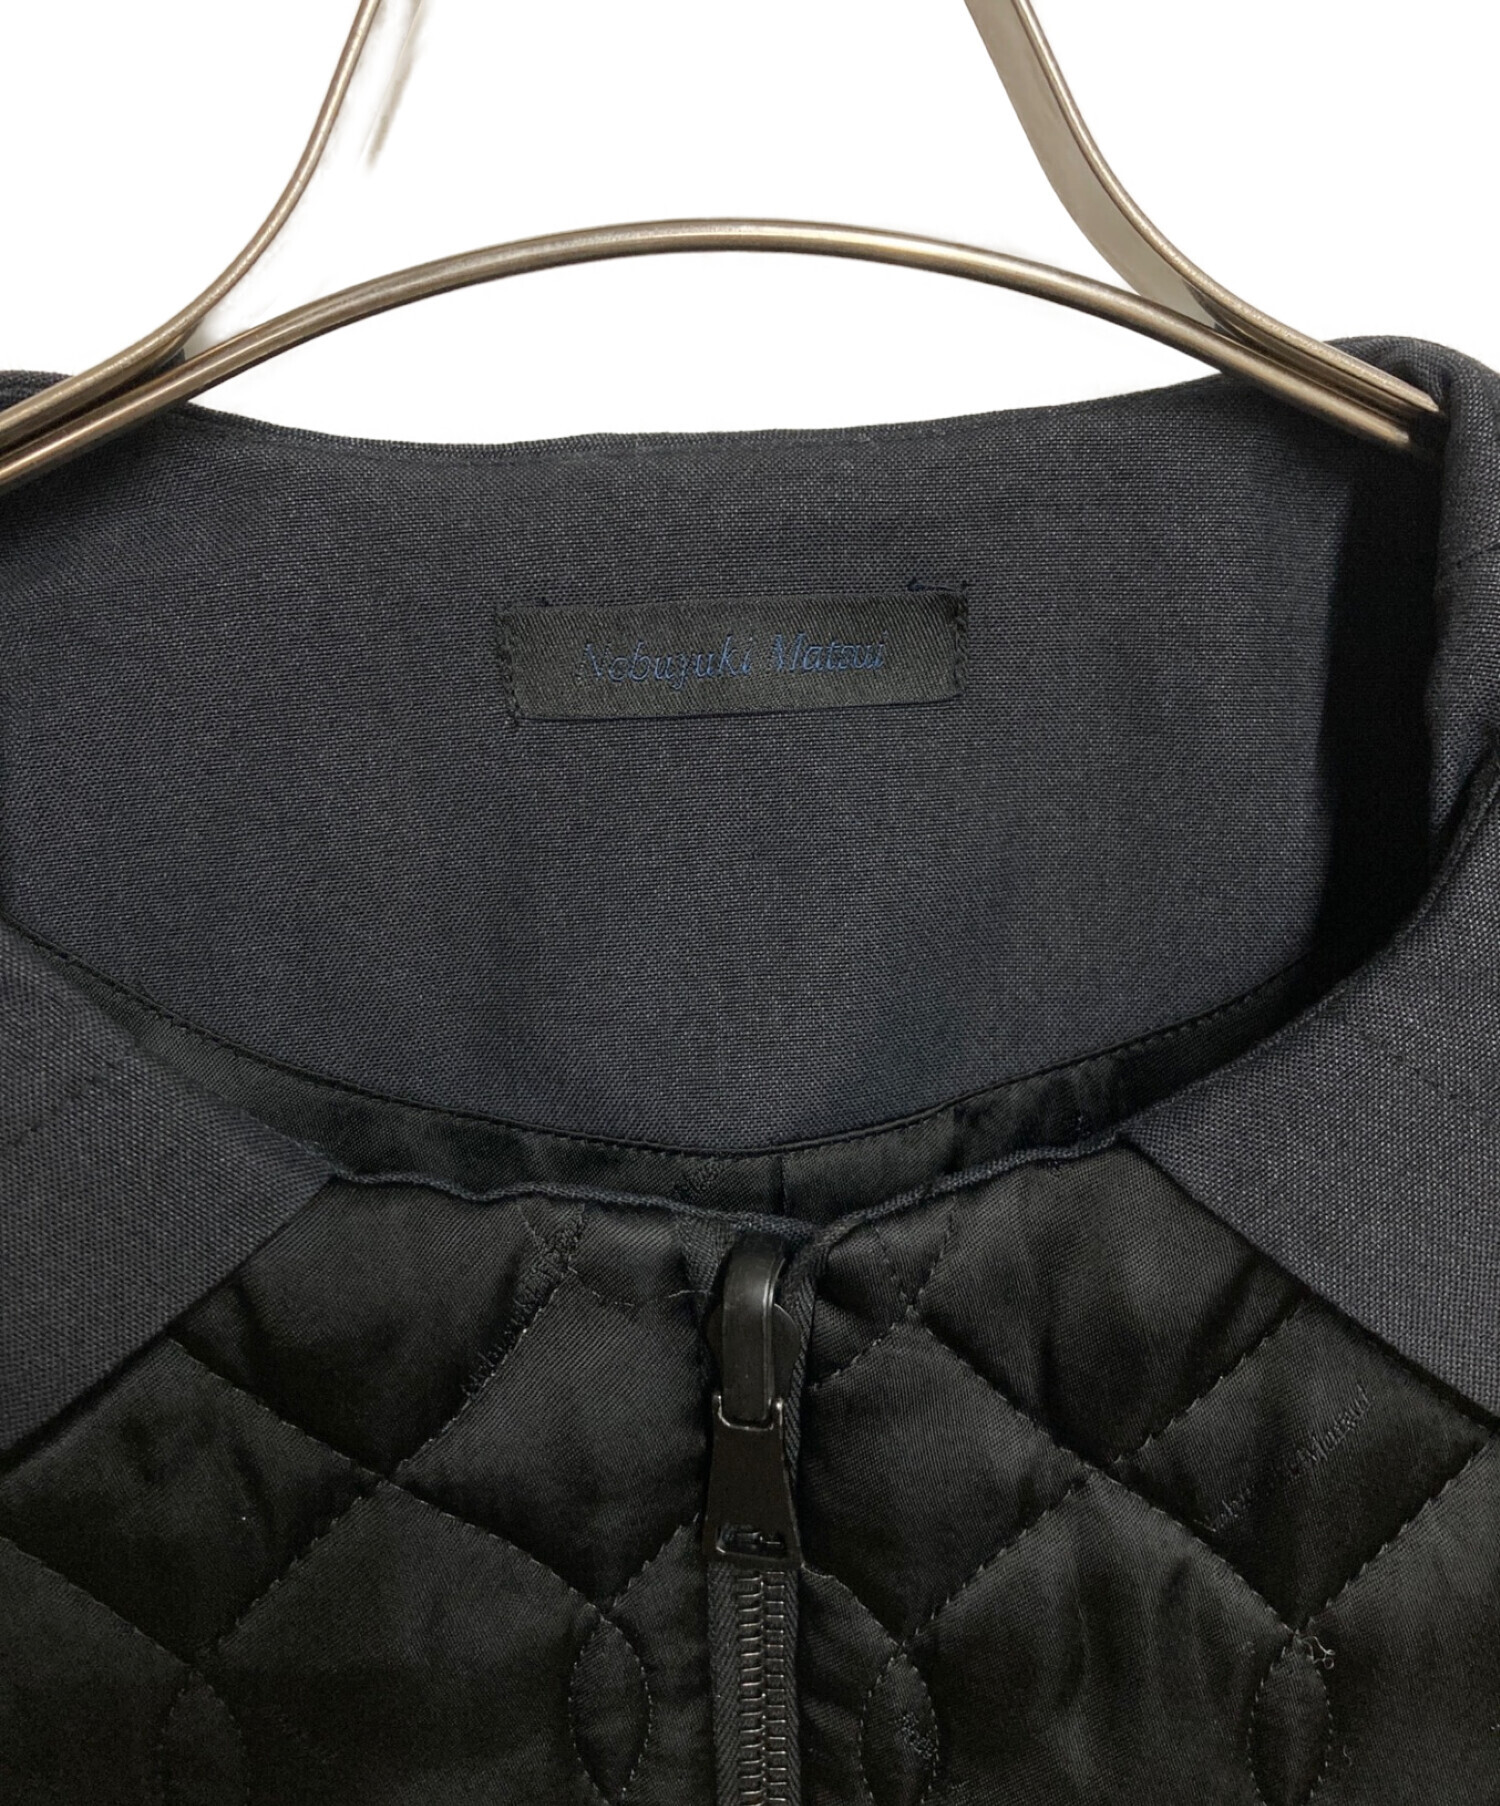 nobuyuki matsui (ノブユキマツイ) キルティングジャケット ブラック サイズ:2